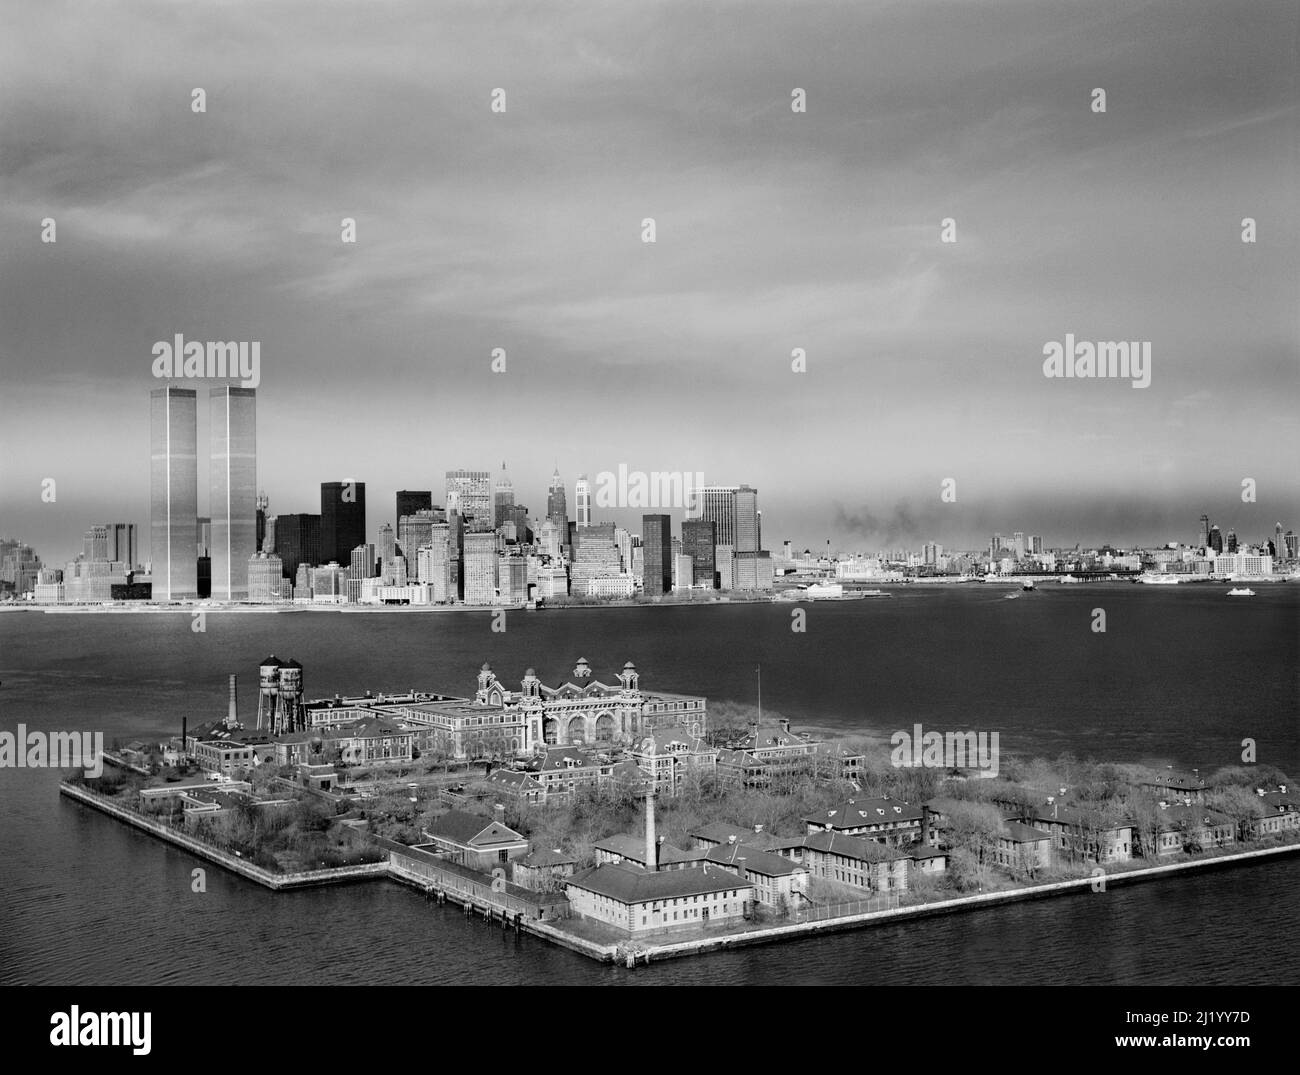 Ellis Island mit der Skyline von Manhattan im Hintergrund, World Trade Center Towers links, New York City, New York, USA, Historic American Buildings Survey Collection, 1970er Jahre Stockfoto